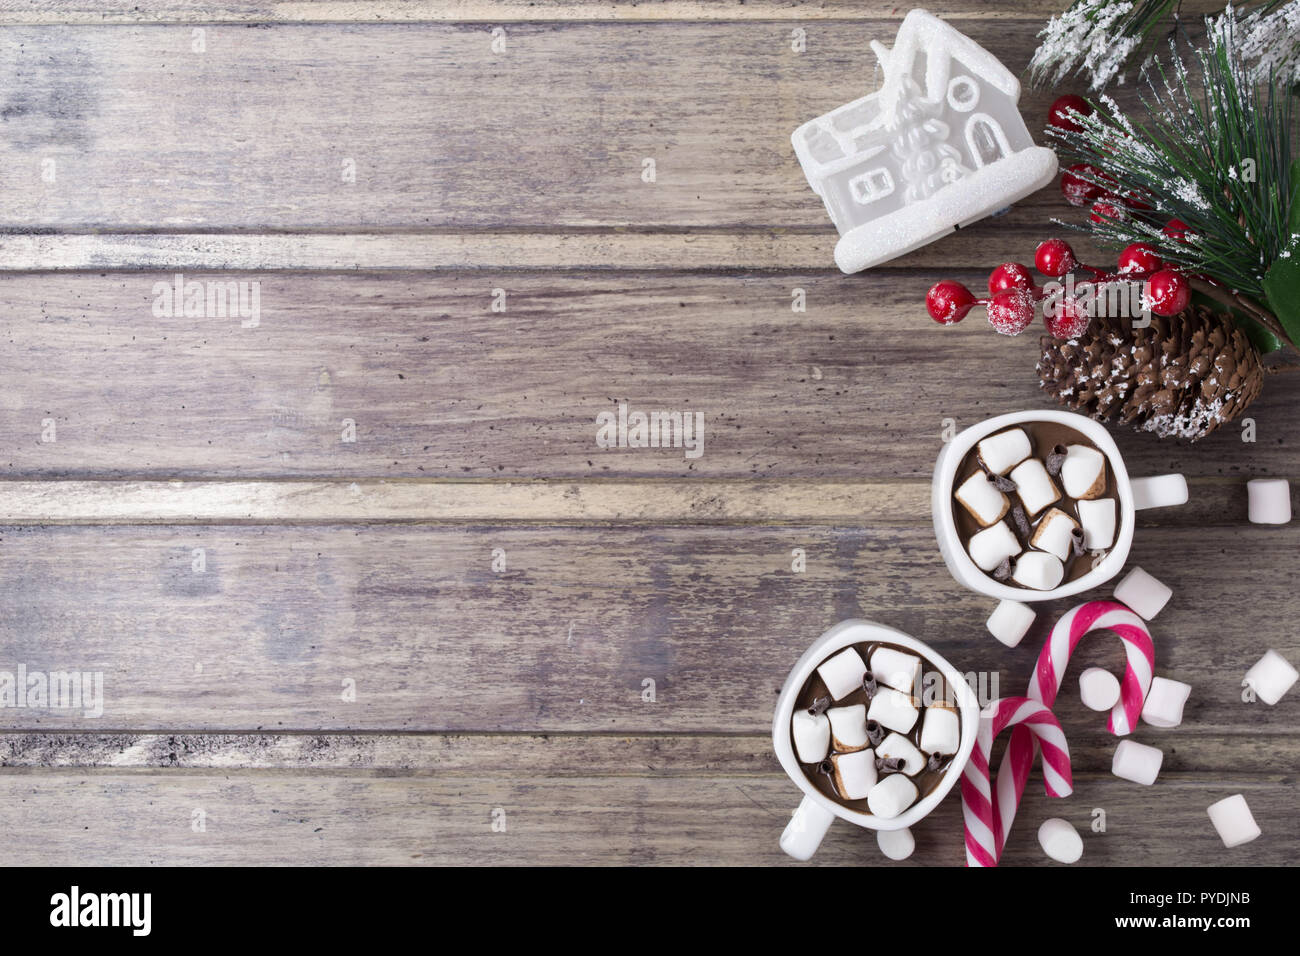 Natale ancora in vita - due tazze di cioccolata calda con marshmallow, caramelle, casa del giocattolo e il ramo di abete con bacche. Spazio di copia Foto Stock